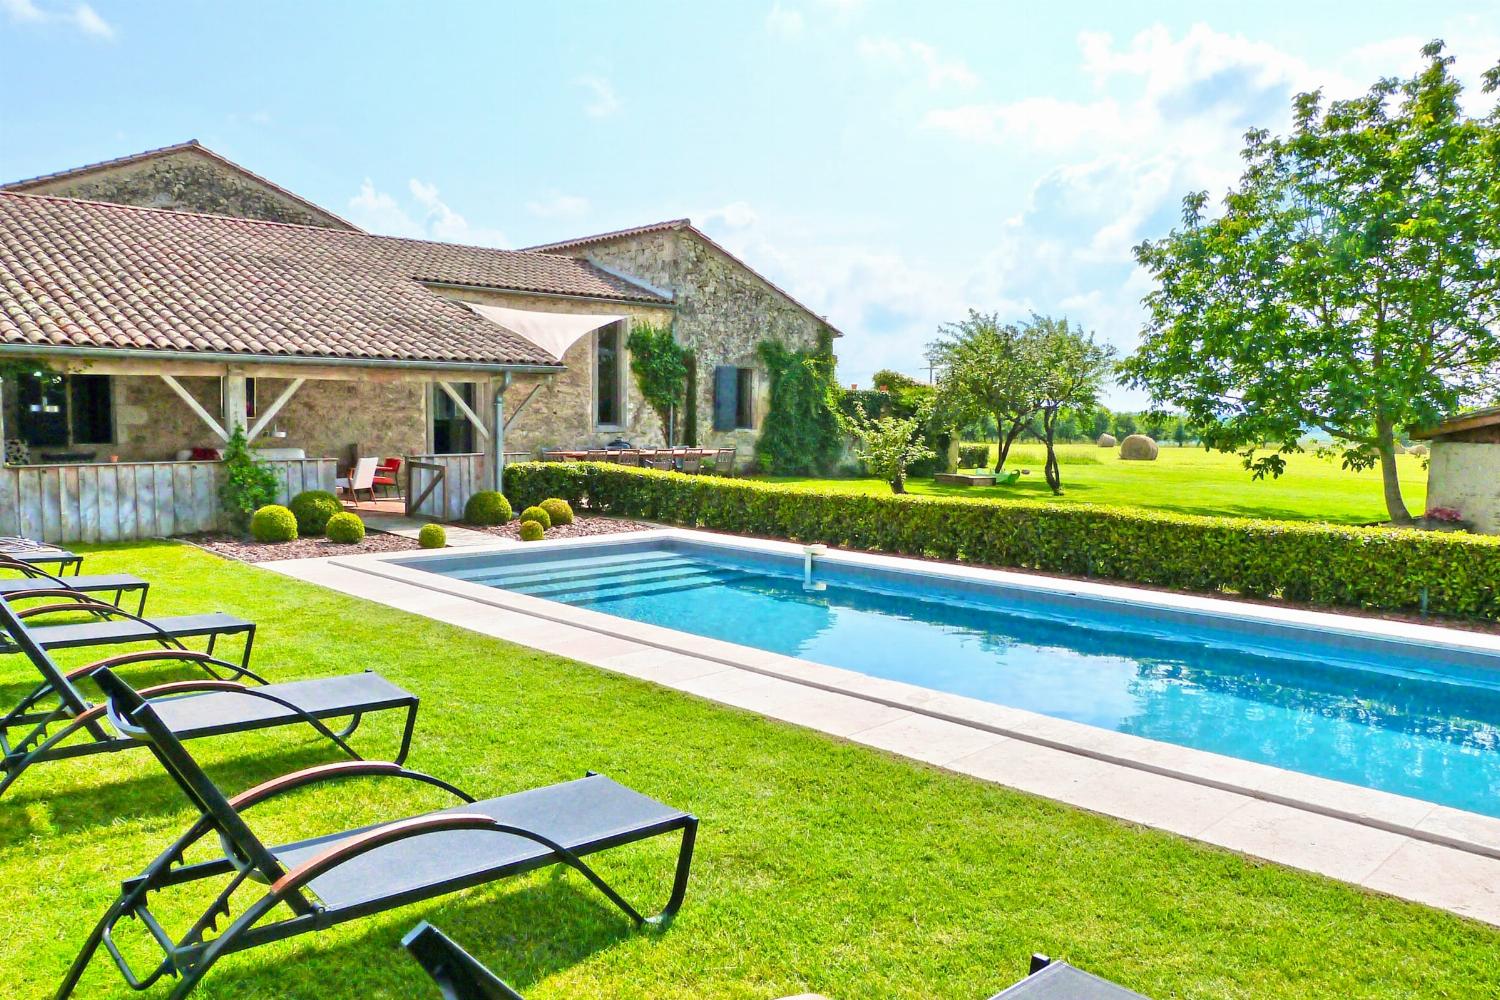 Maison de vacances dans le sud-ouest de la France avec piscine privée chauffée